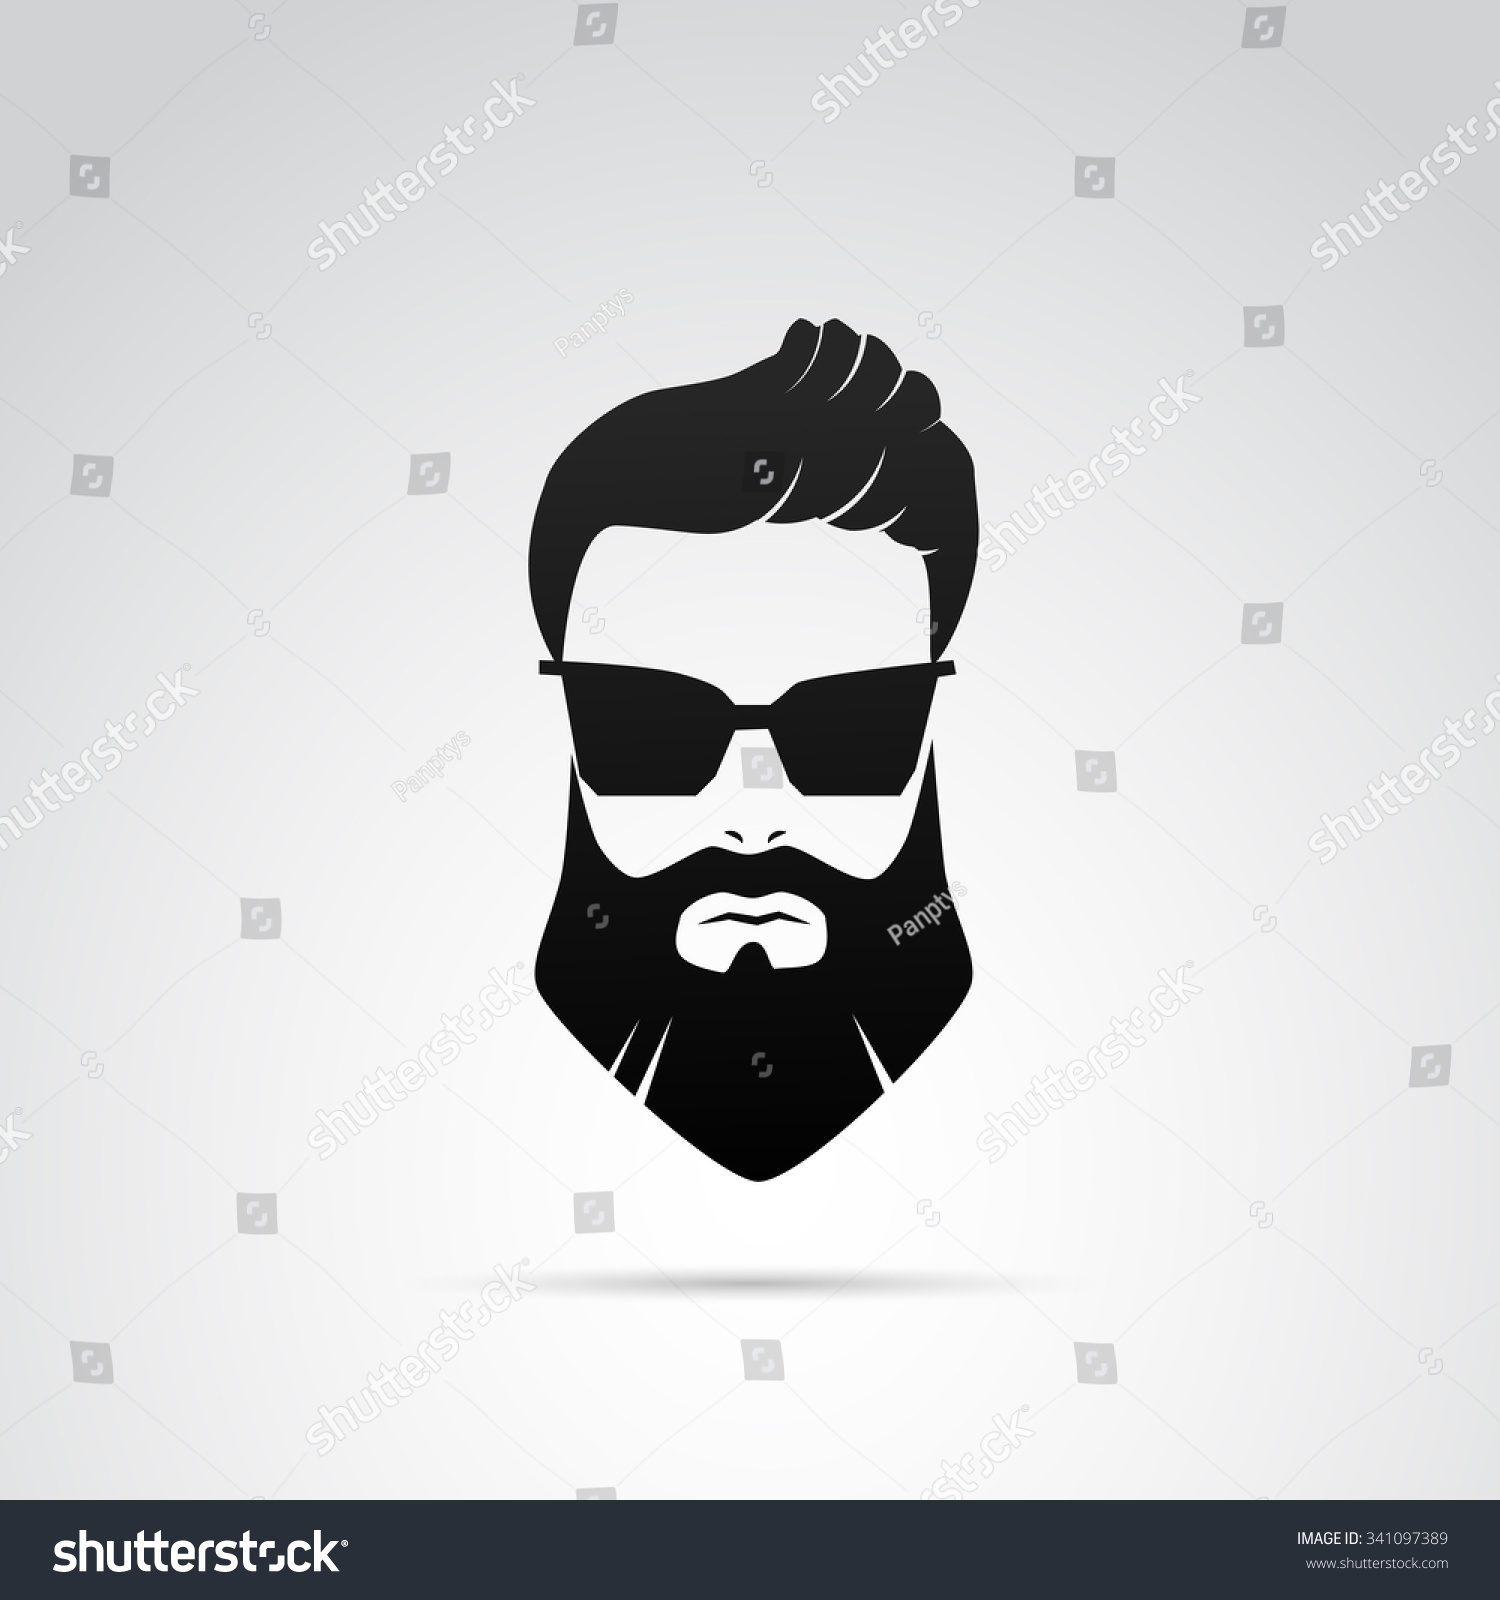 Beard Icon Isolated On White Background. Stock Photo 341097389